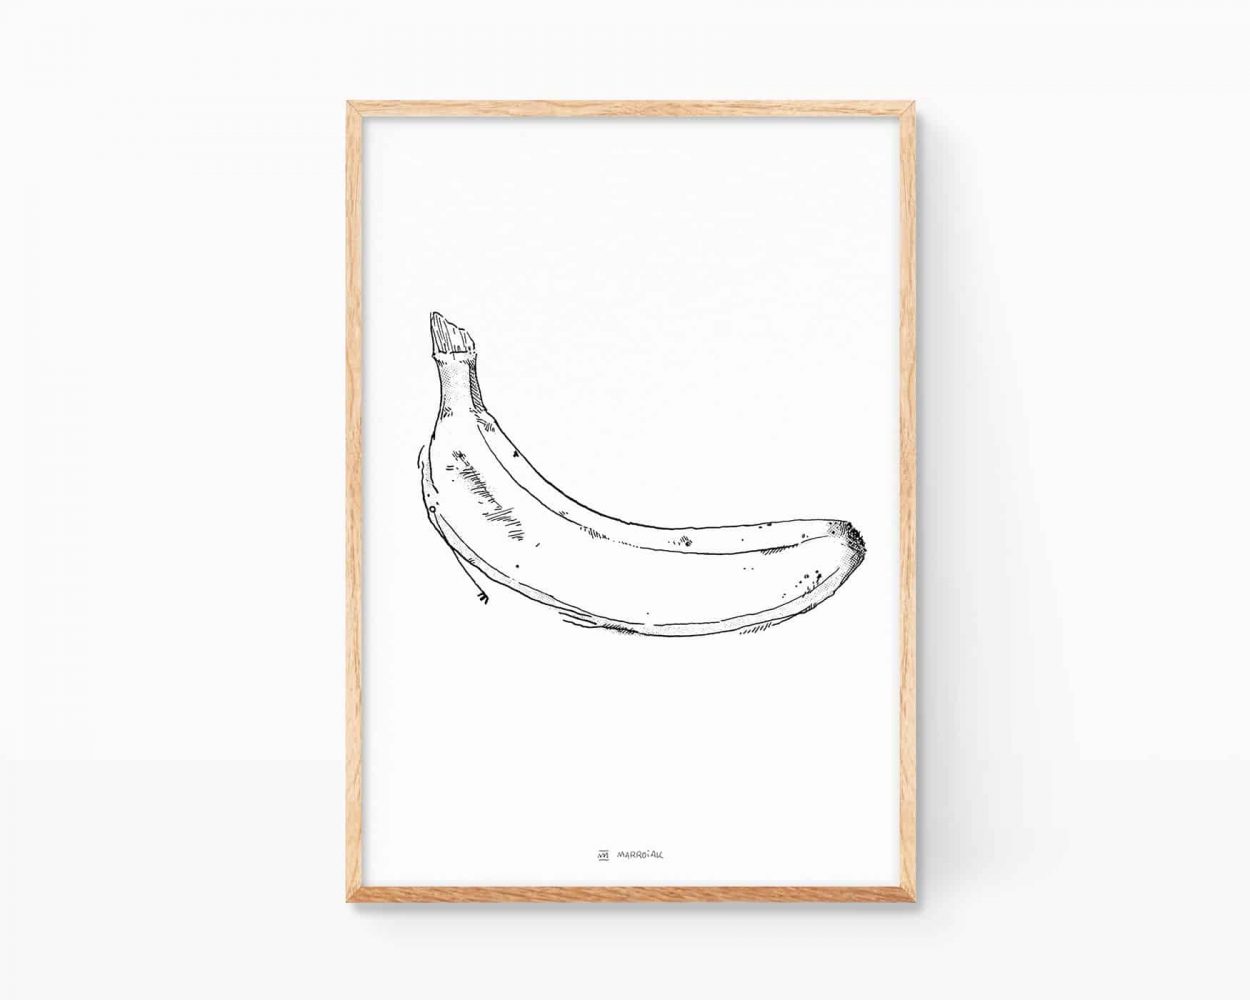 Lámina decorativa con dibujo en blanco y negro de un plátano. Decoración cuadro estilo andy warhol y velvet underground.